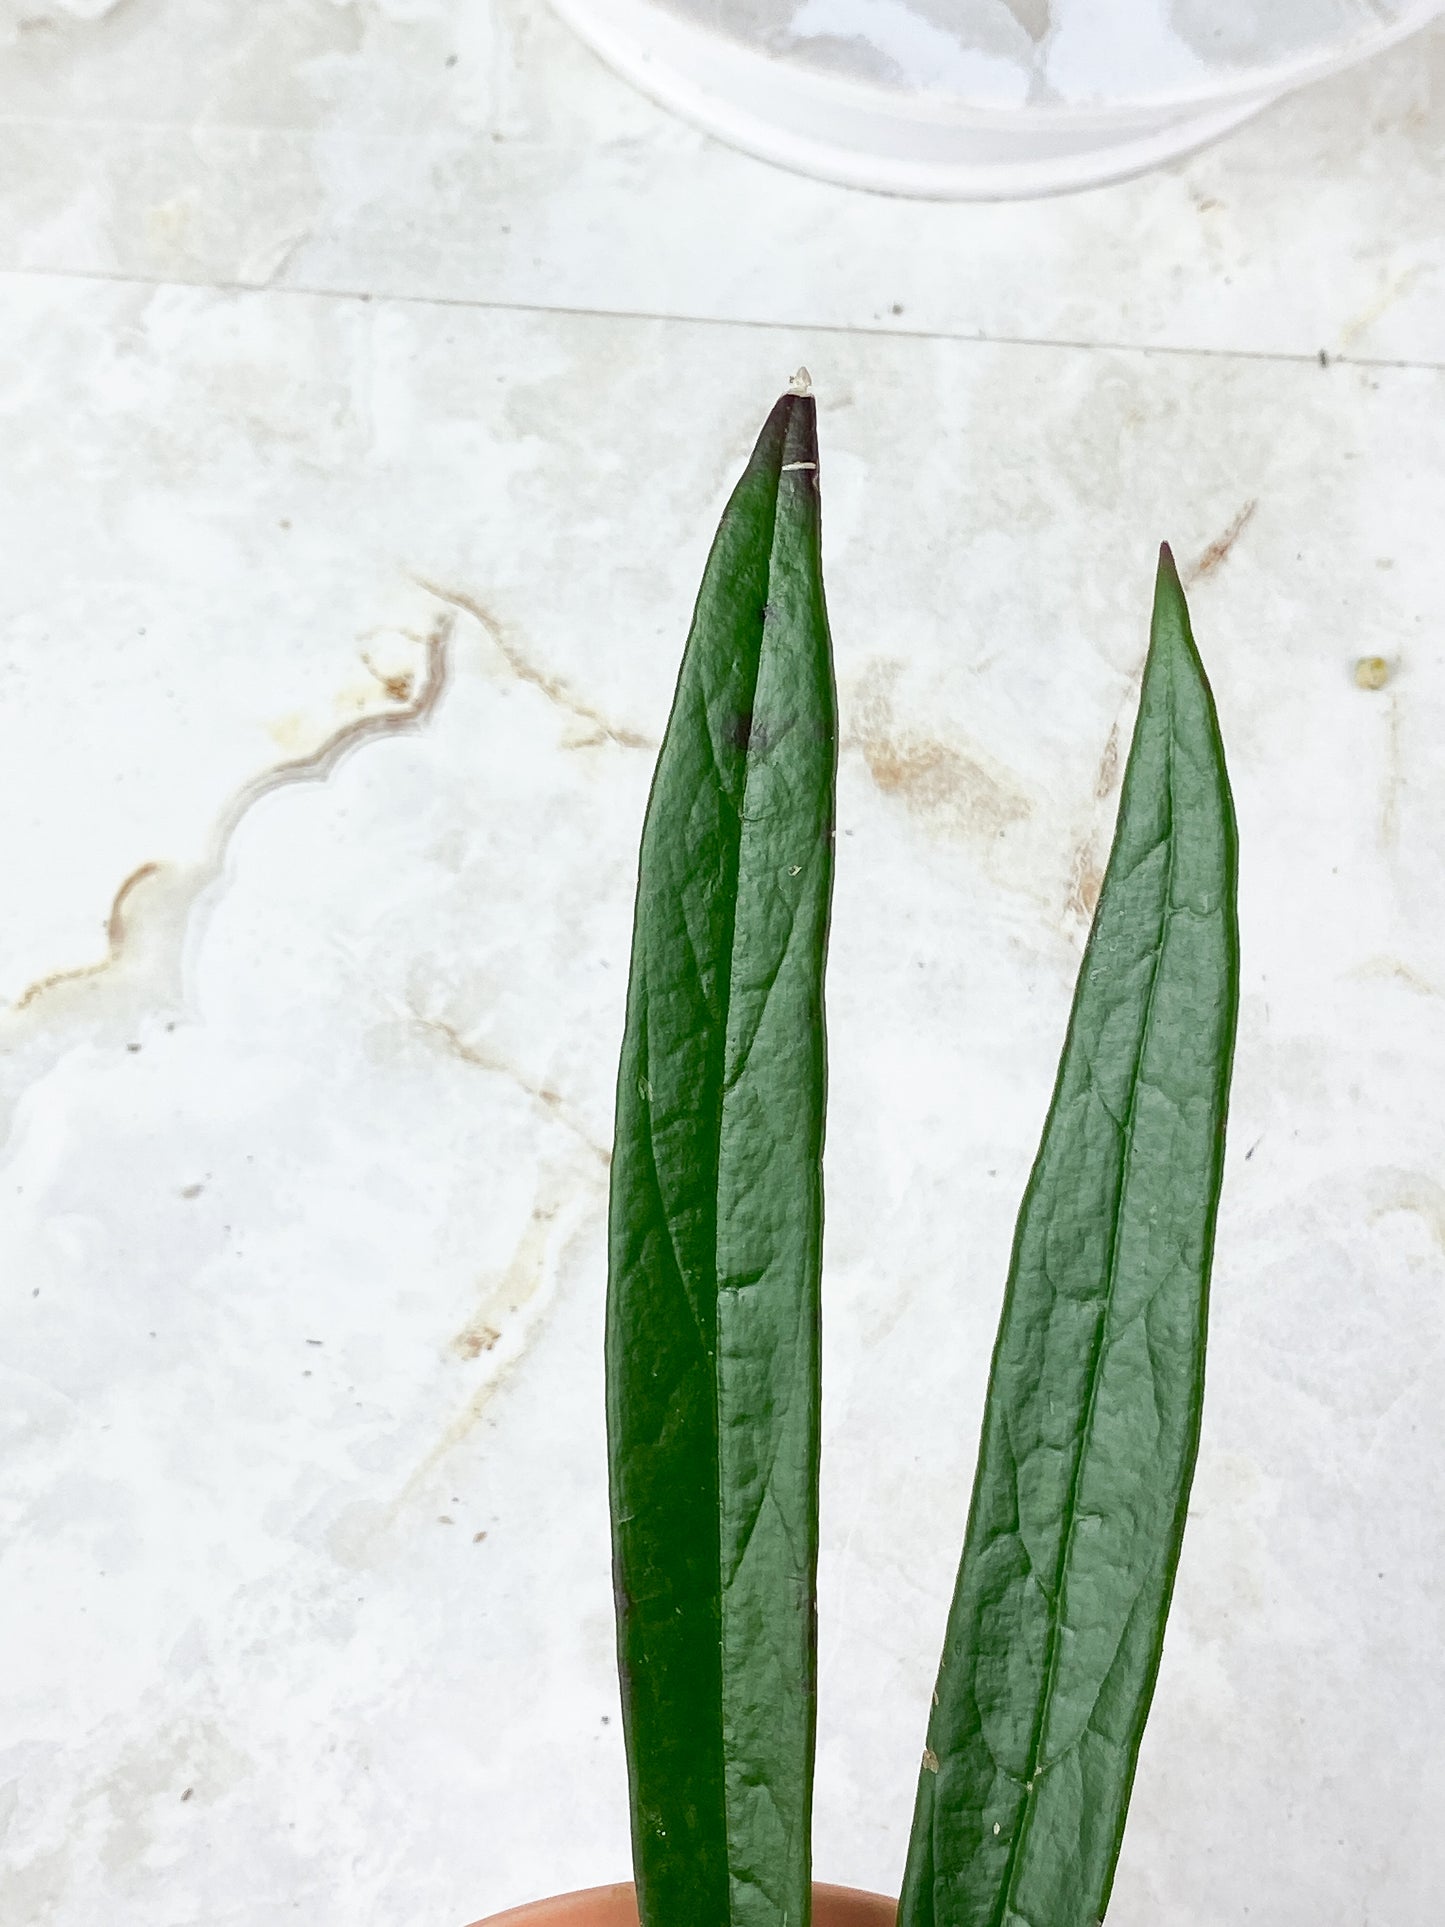 Hoya Sulawesiana 2 leaves slightly rooted (8" long leaf)